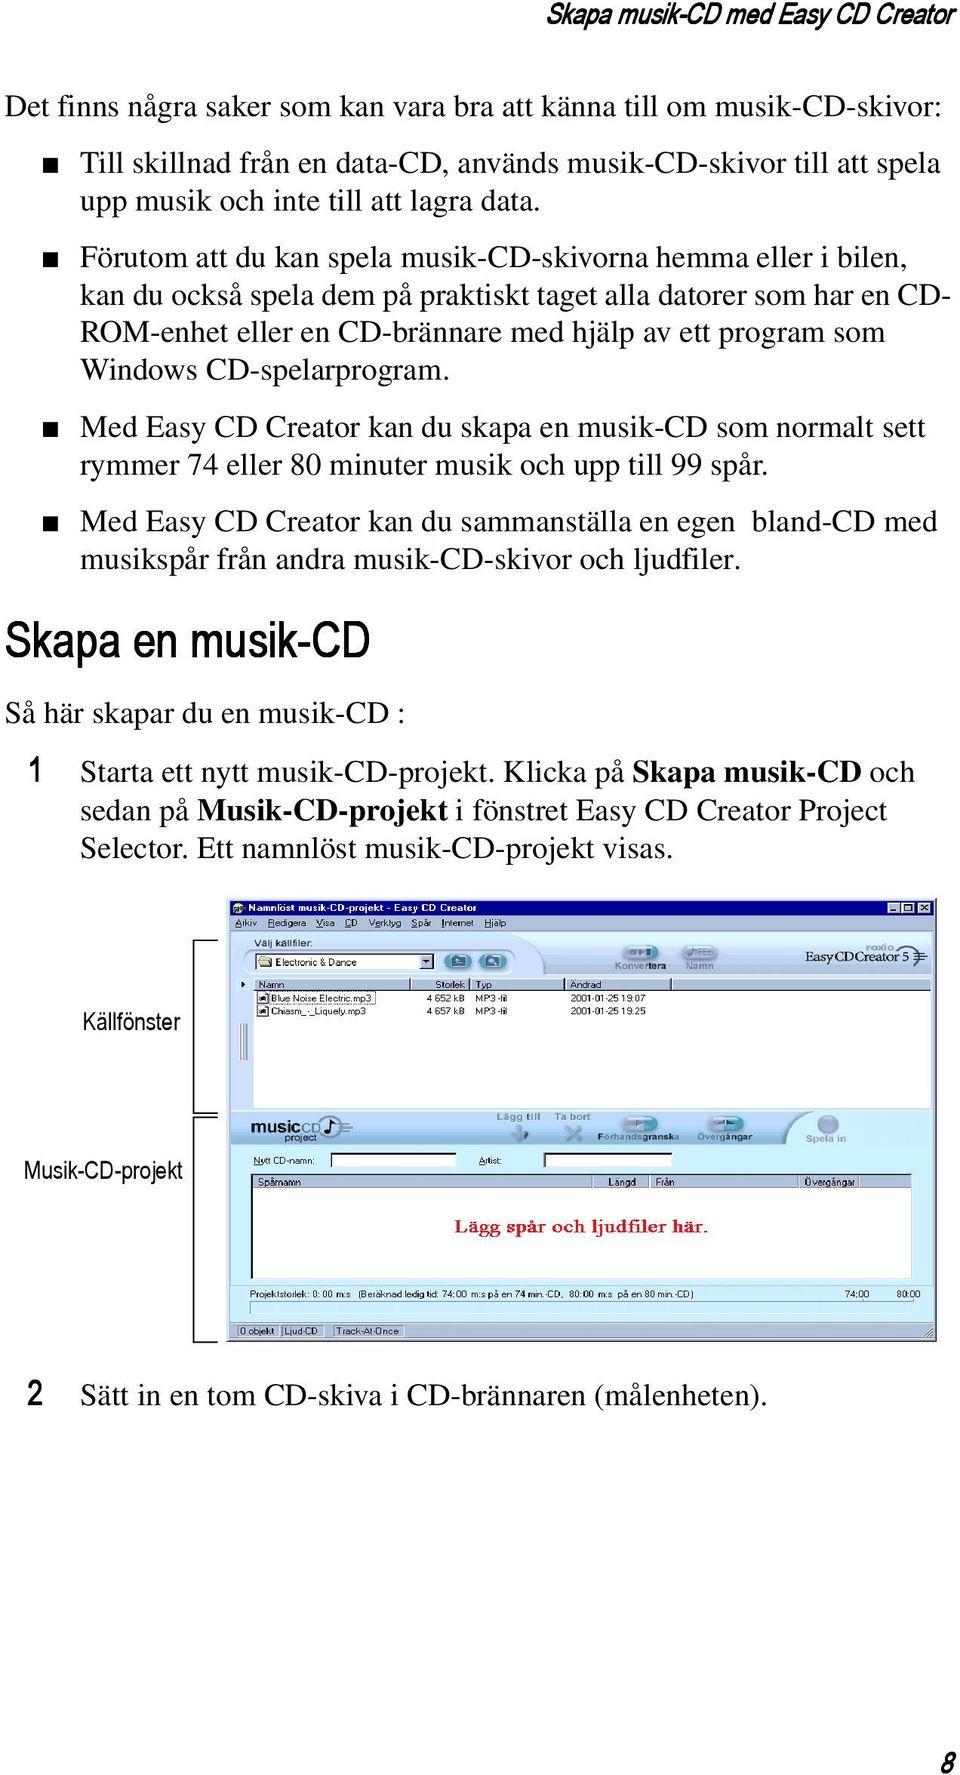 Förutom att du kan spela musik-cd-skivorna hemma eller i bilen, kan du också spela dem på praktiskt taget alla datorer som har en CD- ROM-enhet eller en CD-brännare med hjälp av ett program som